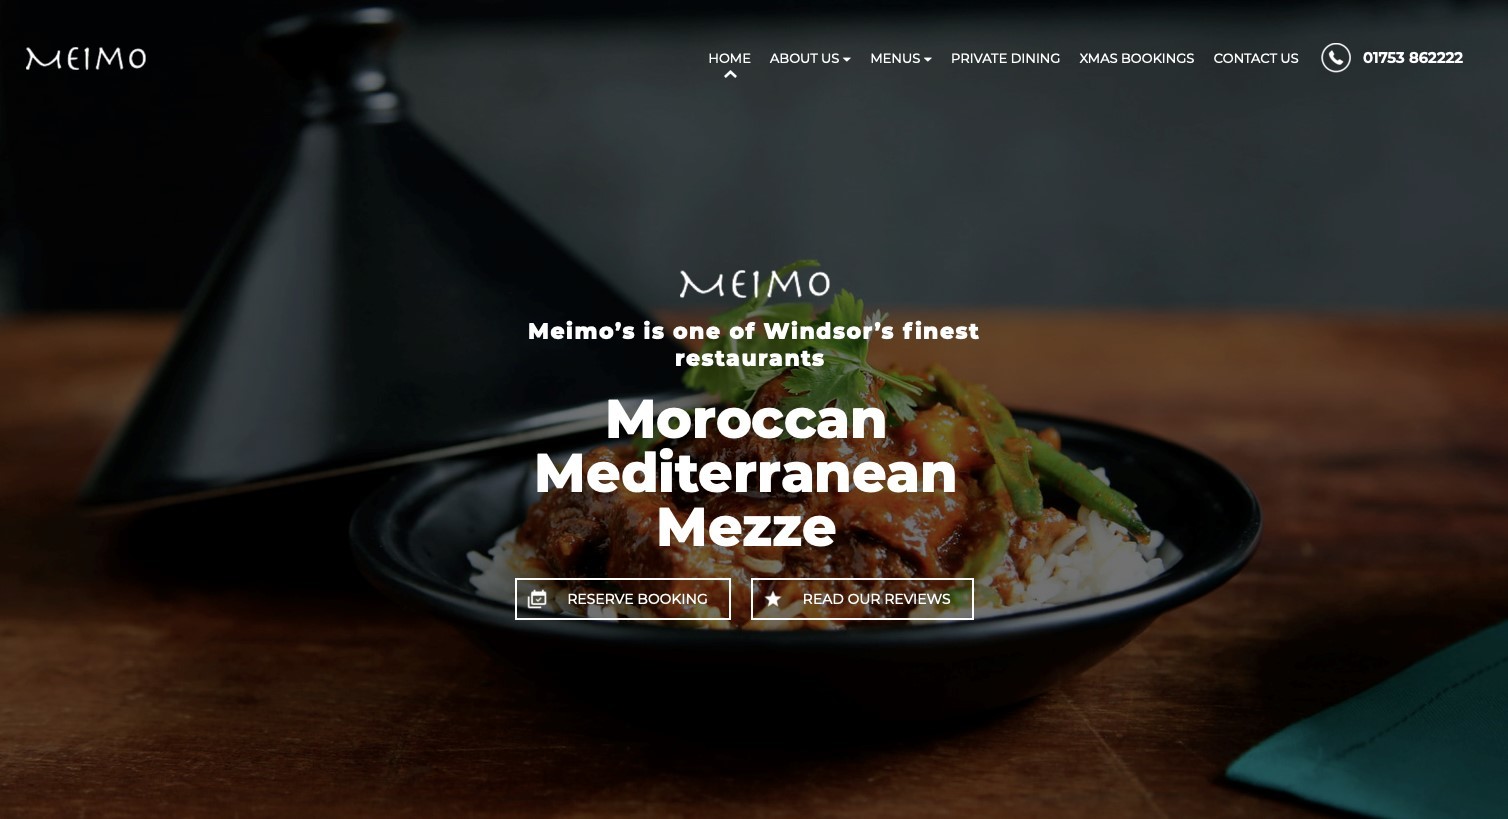 Meimo Morrocan Mediterranean Mezze website screenshot